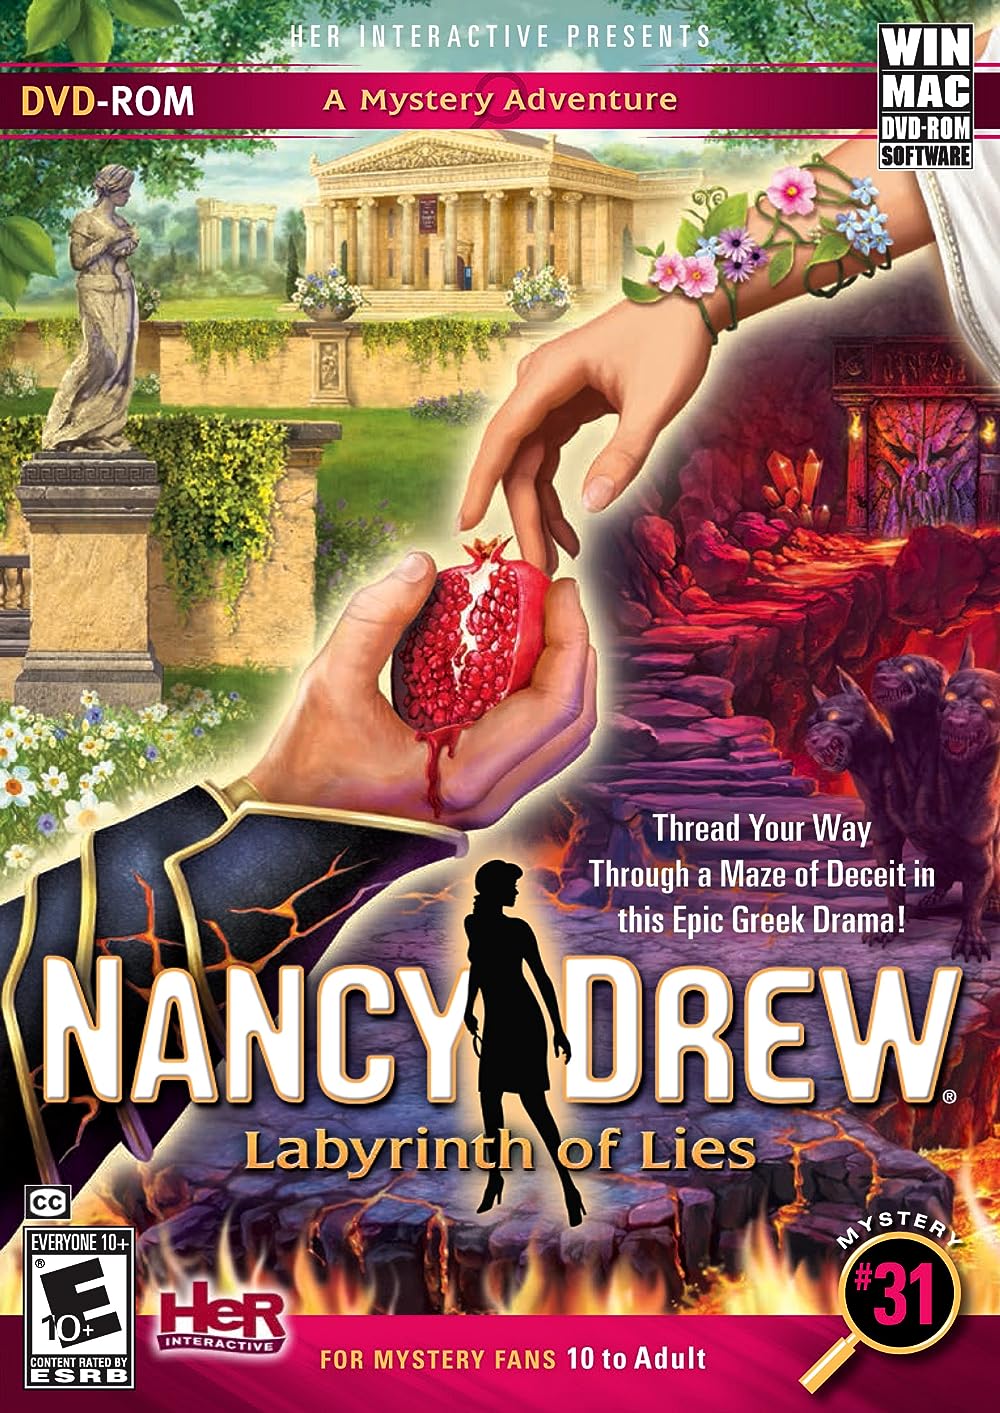 jaquette du jeu vidéo Nancy Drew: Labyrinth of Lies